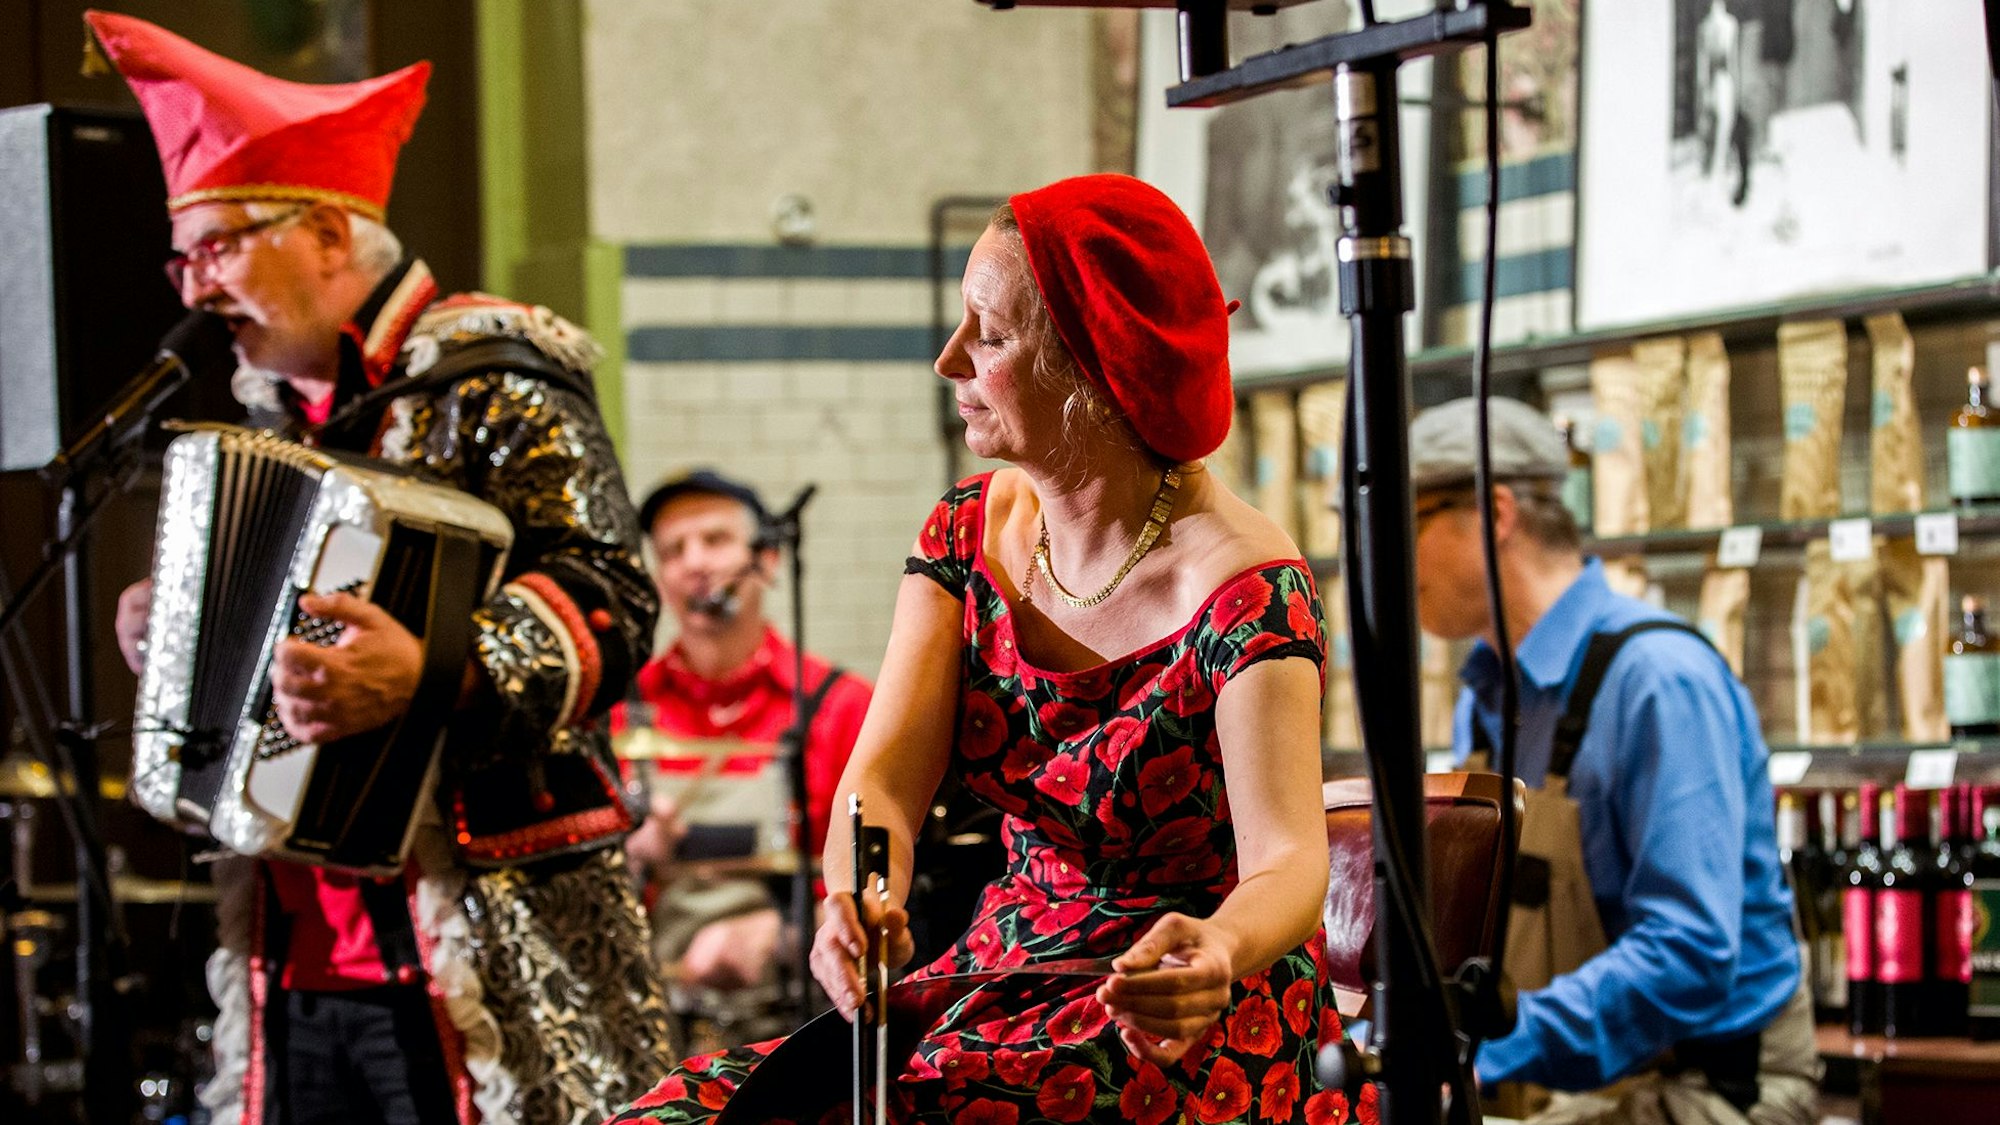 Mann im Karnevalskostüm, der Akkodeon spielt und Frau, die einem Instrument spielt.